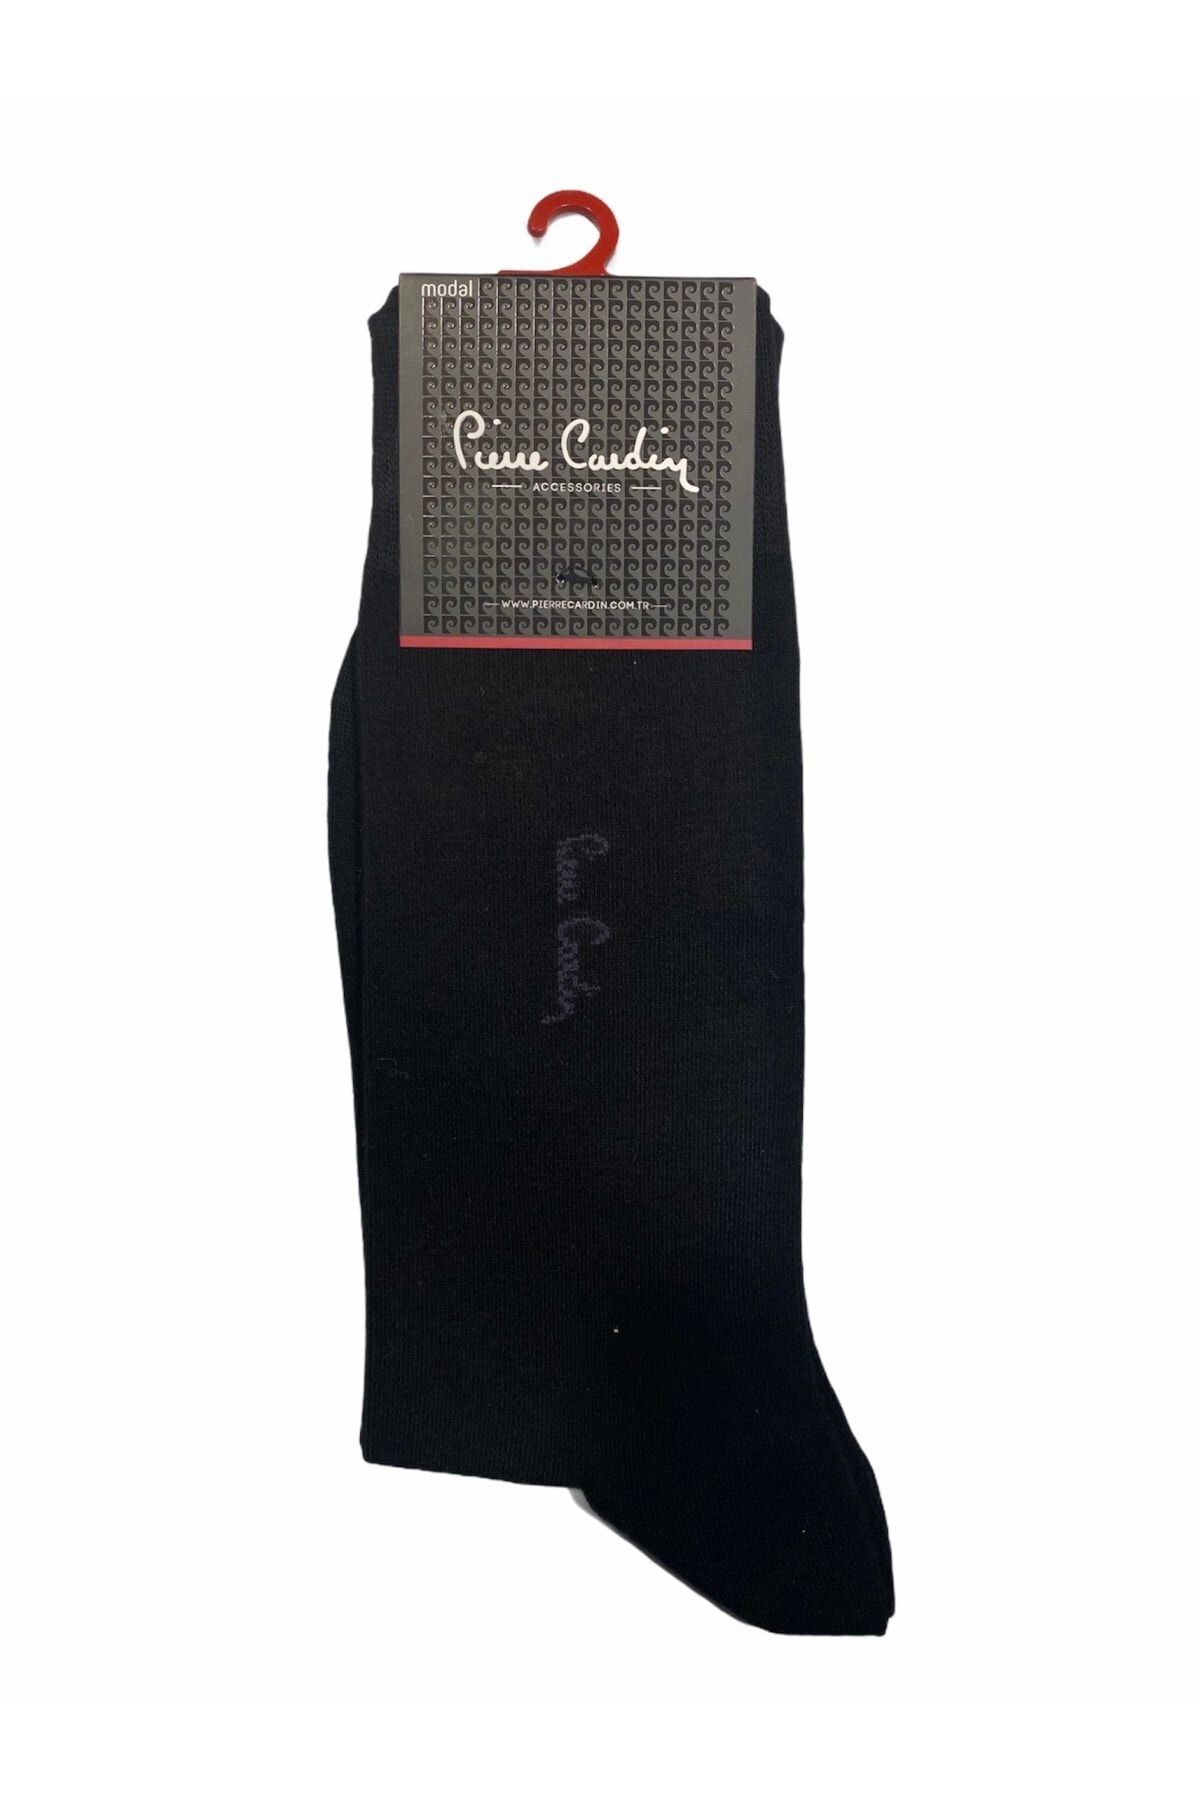 Pierre Cardin Paket Modal Pamuk Çorap 6lı